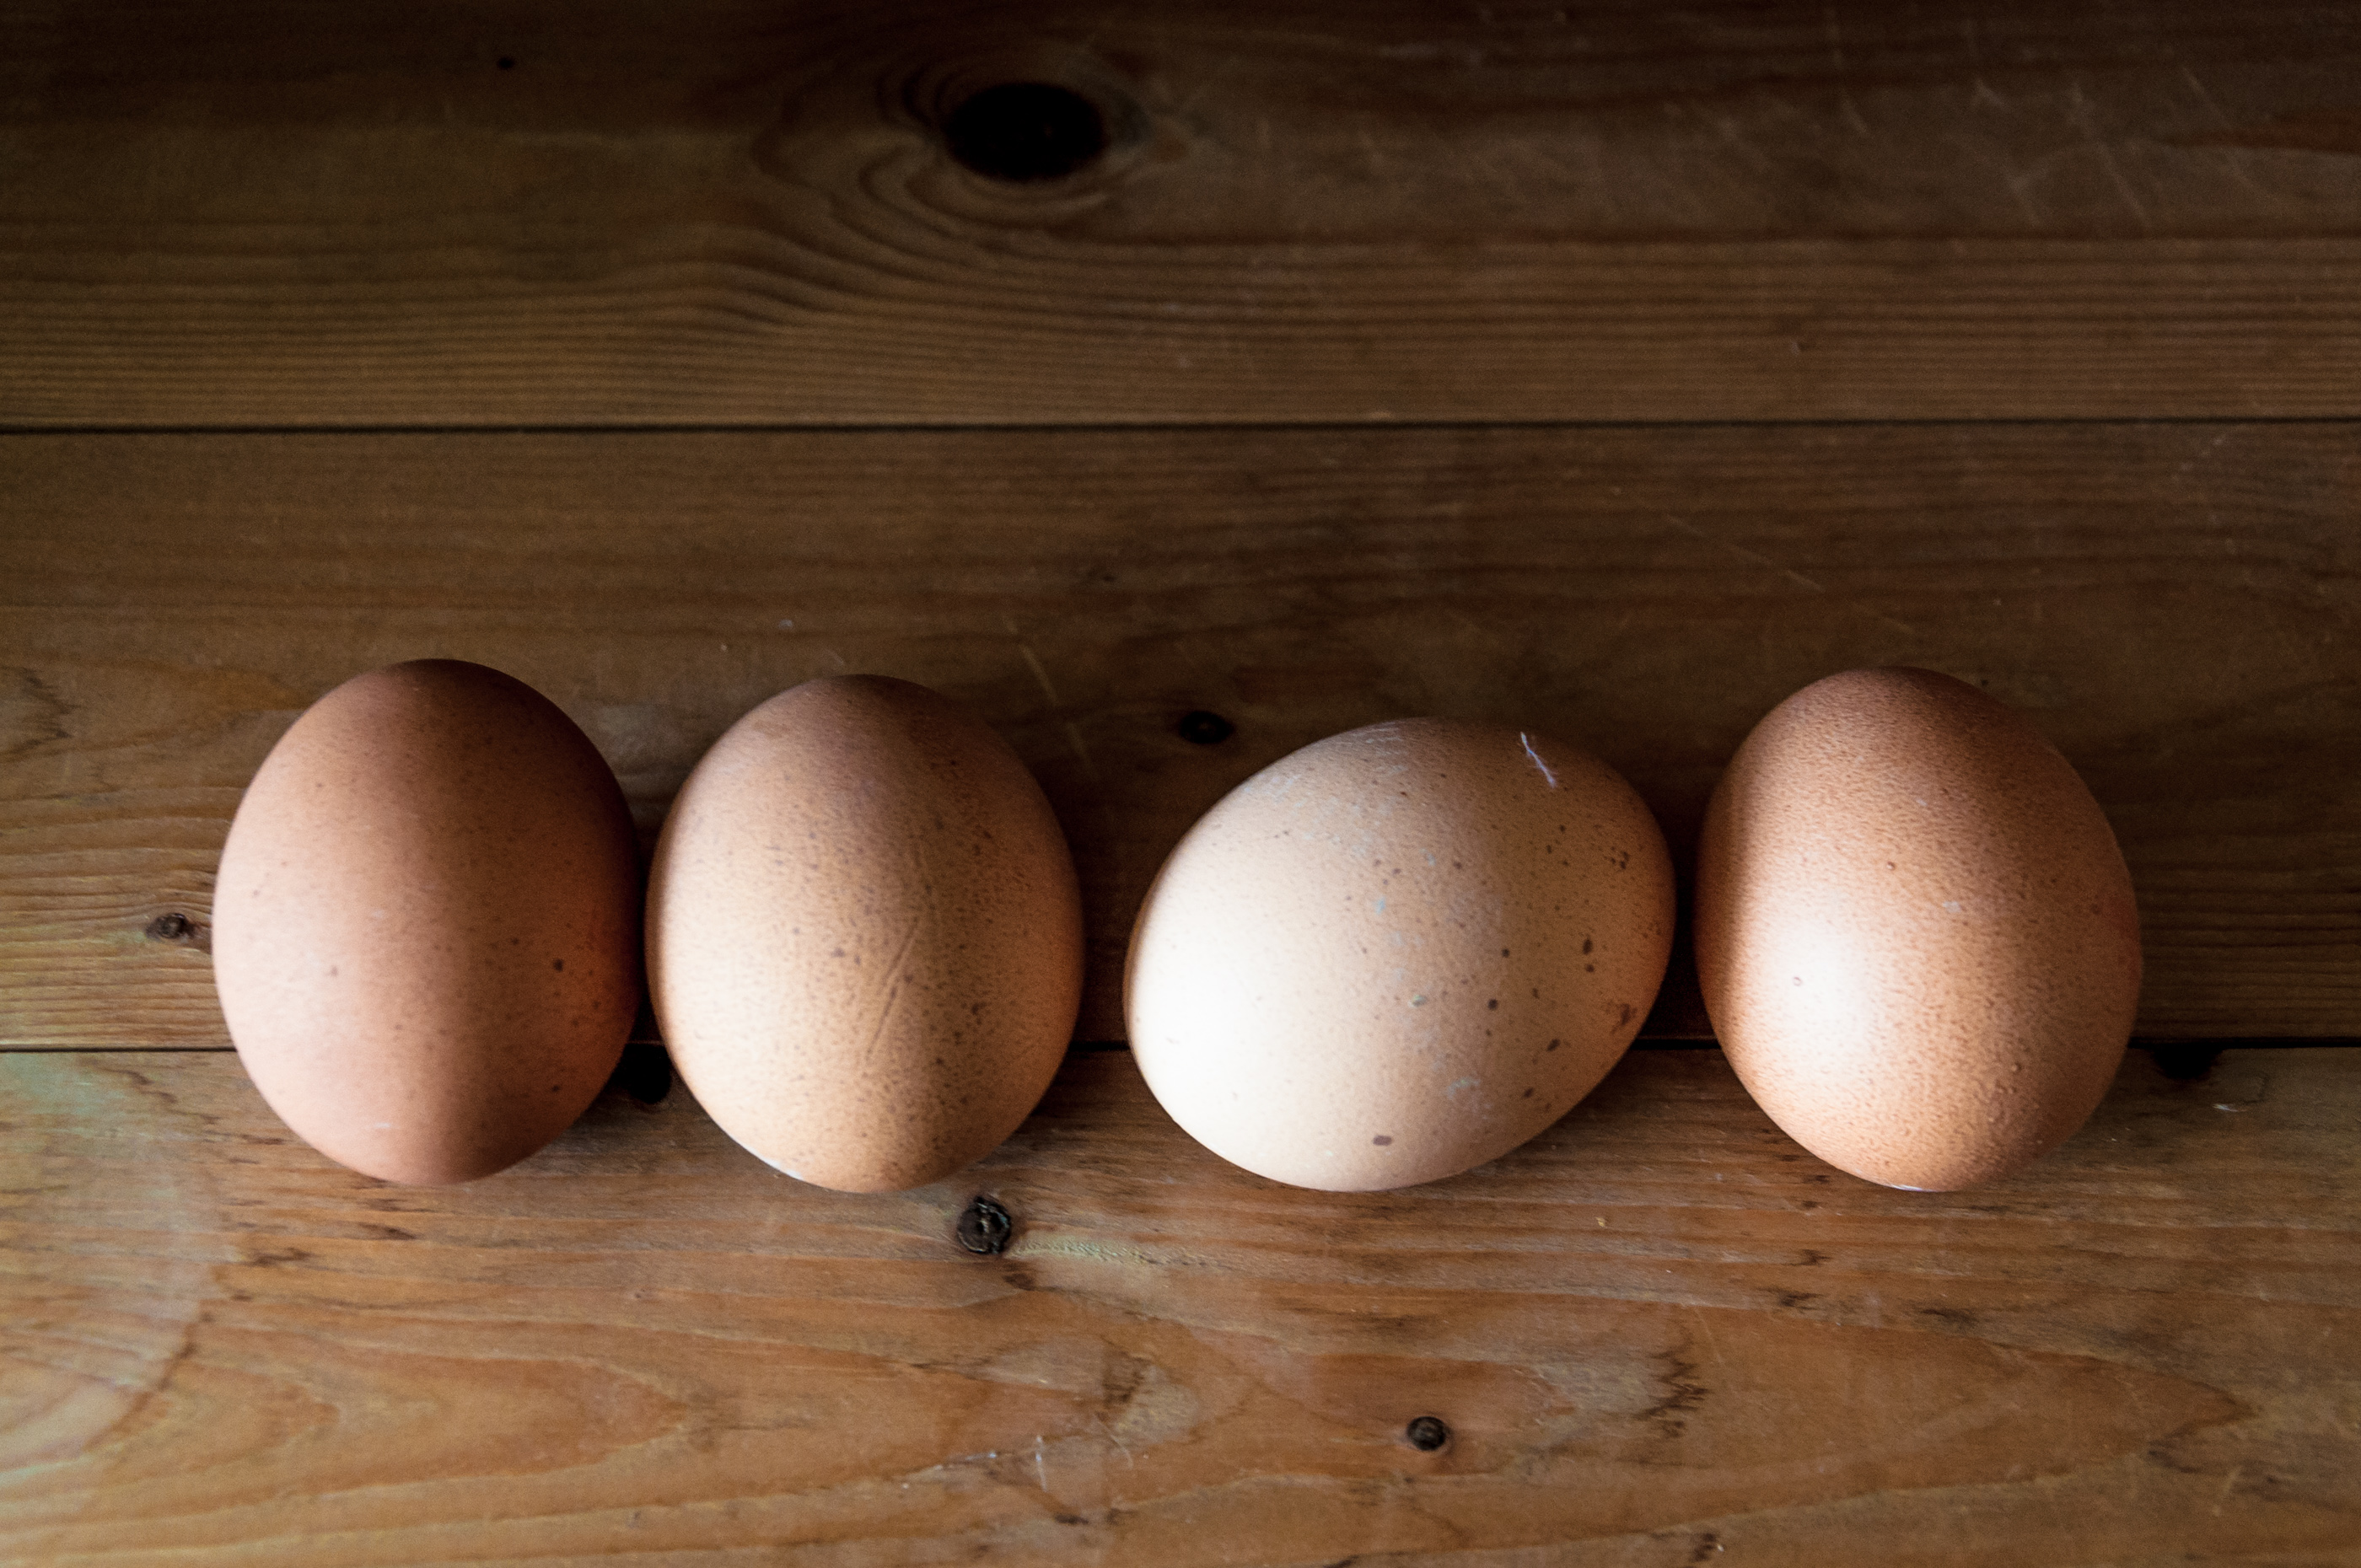 Eggs on wood background photo